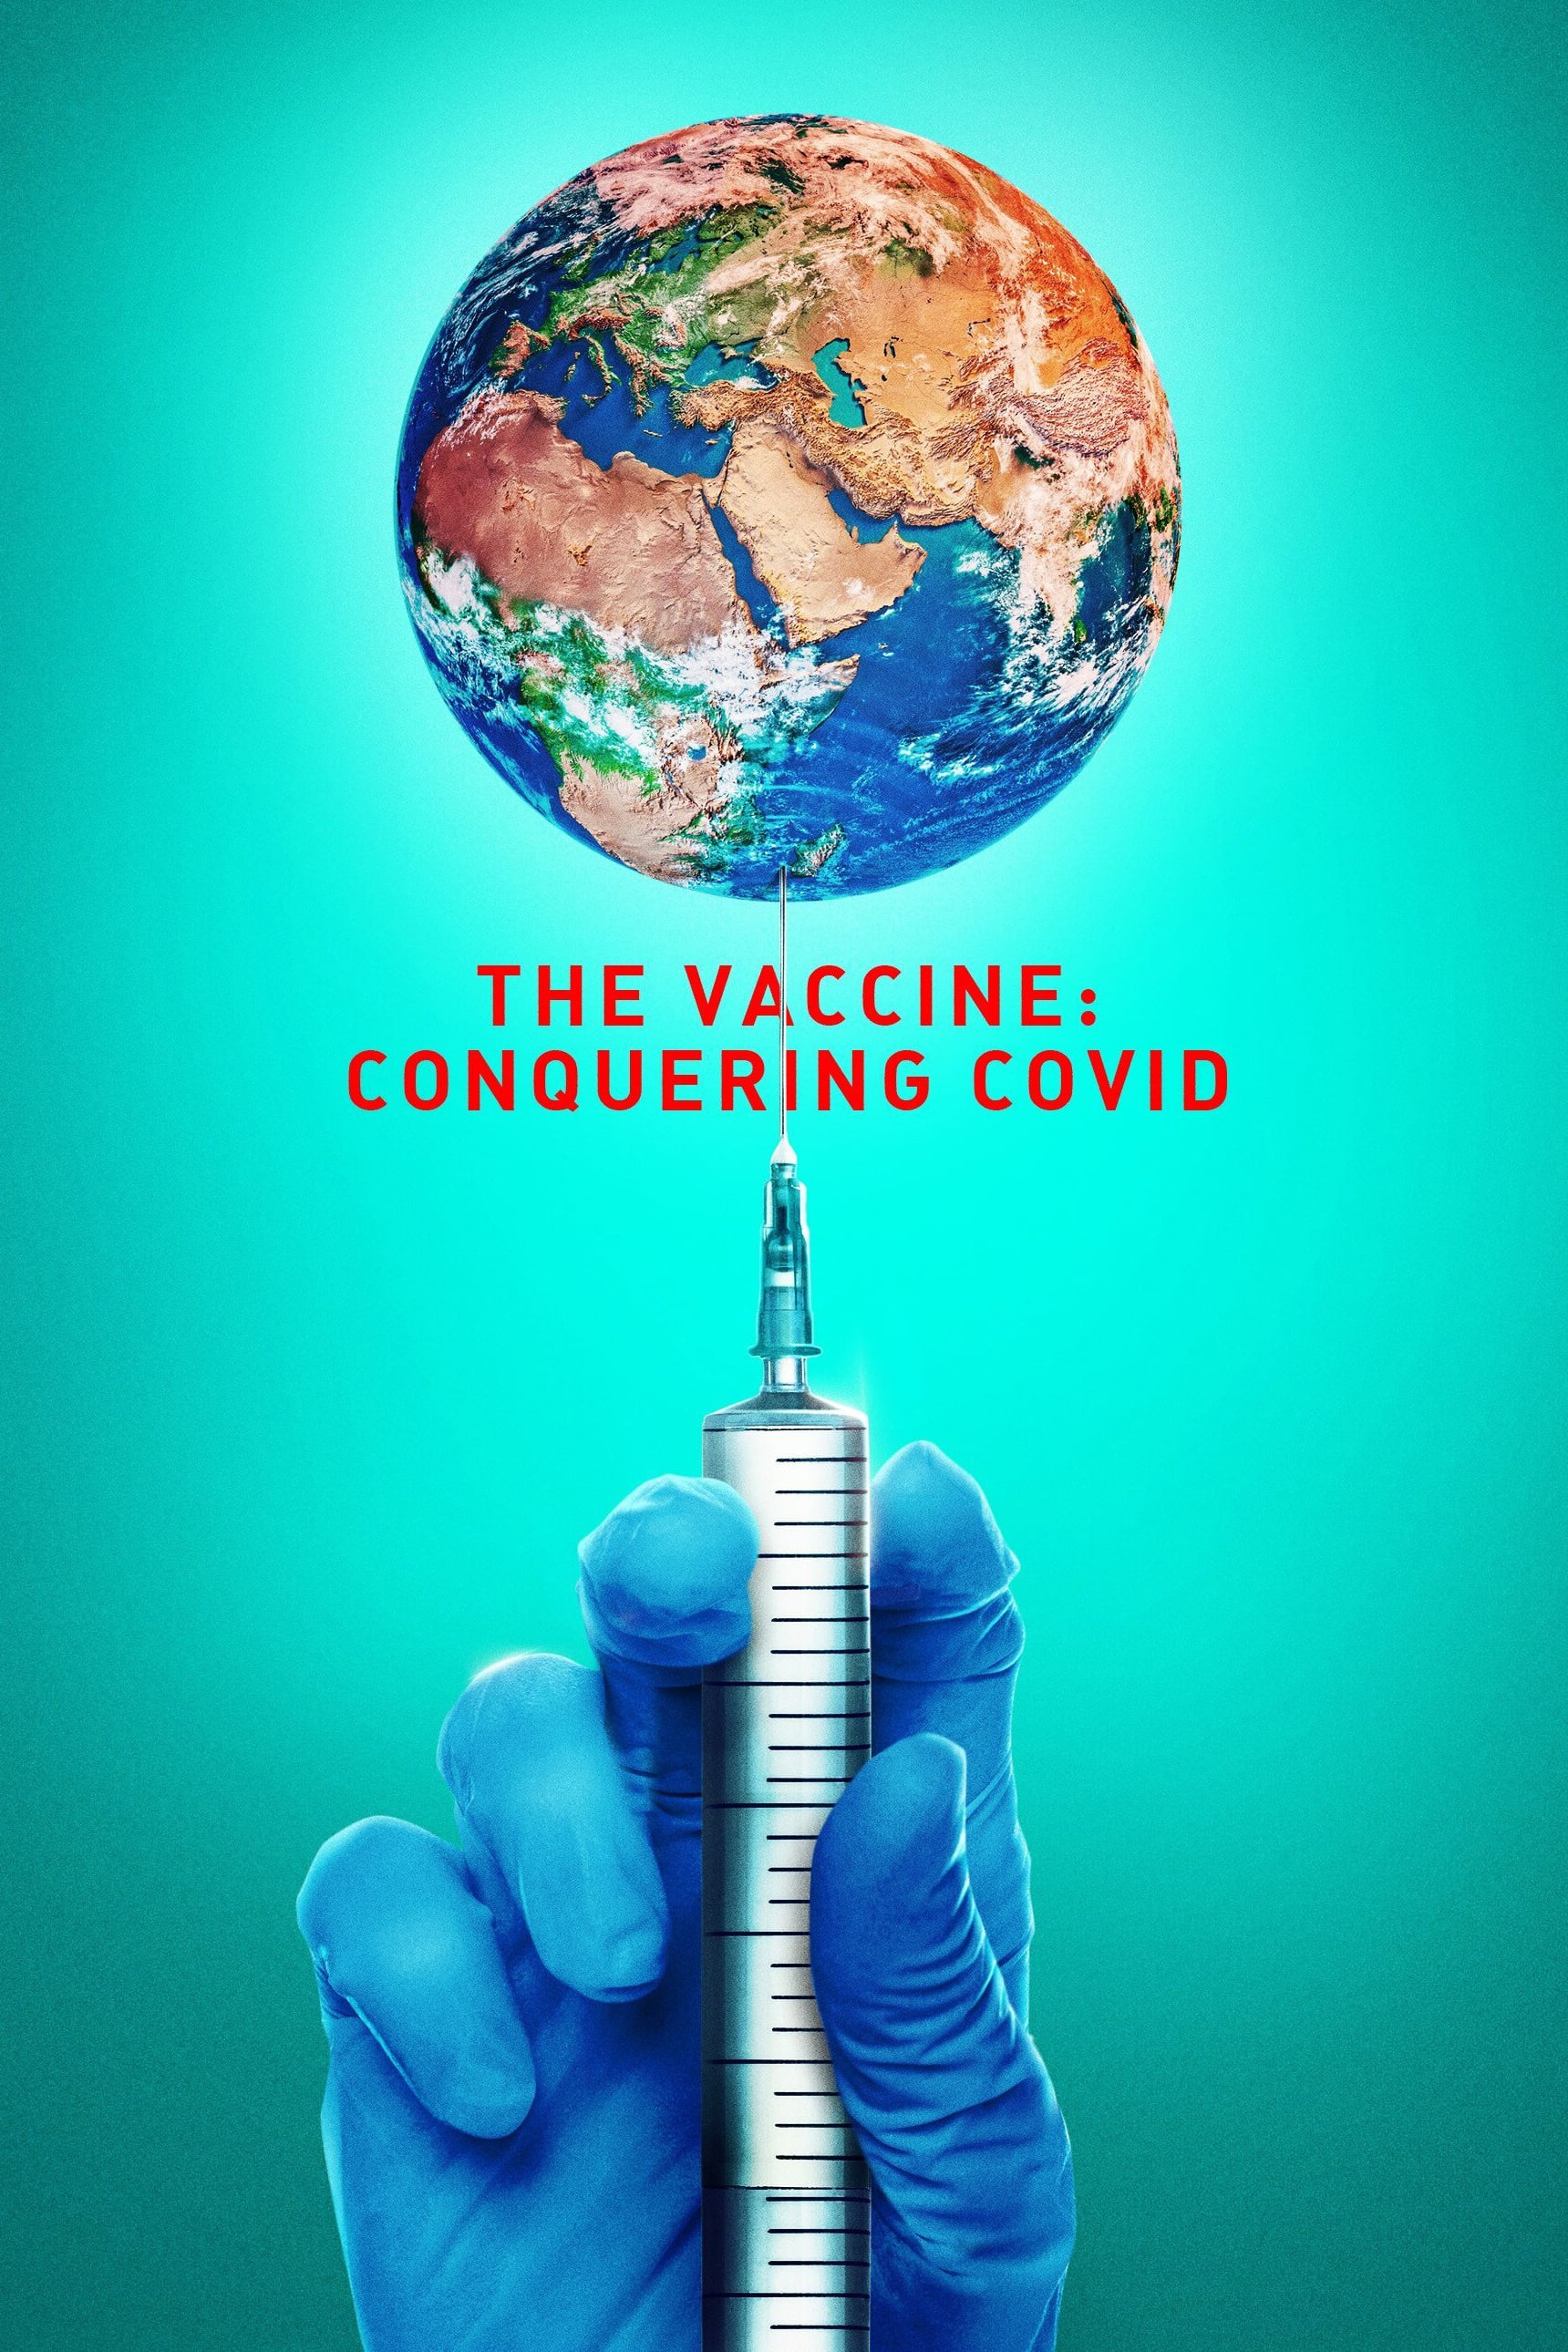 La vacuna: carrera contra el Covid